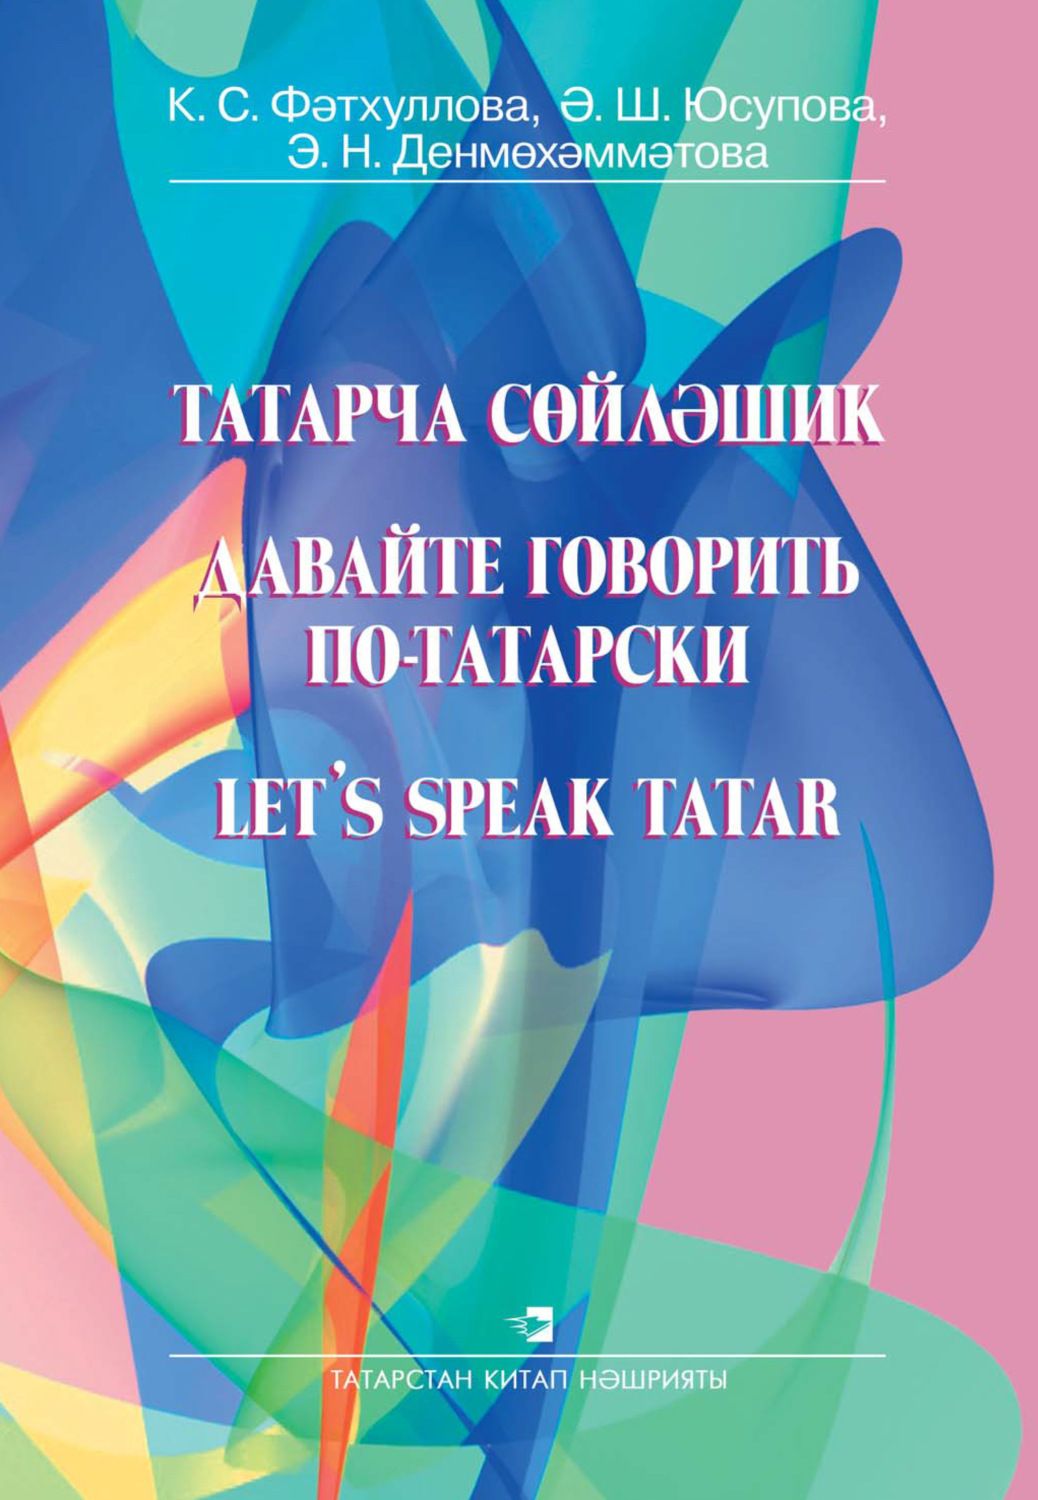 Самоучитель татарского языка